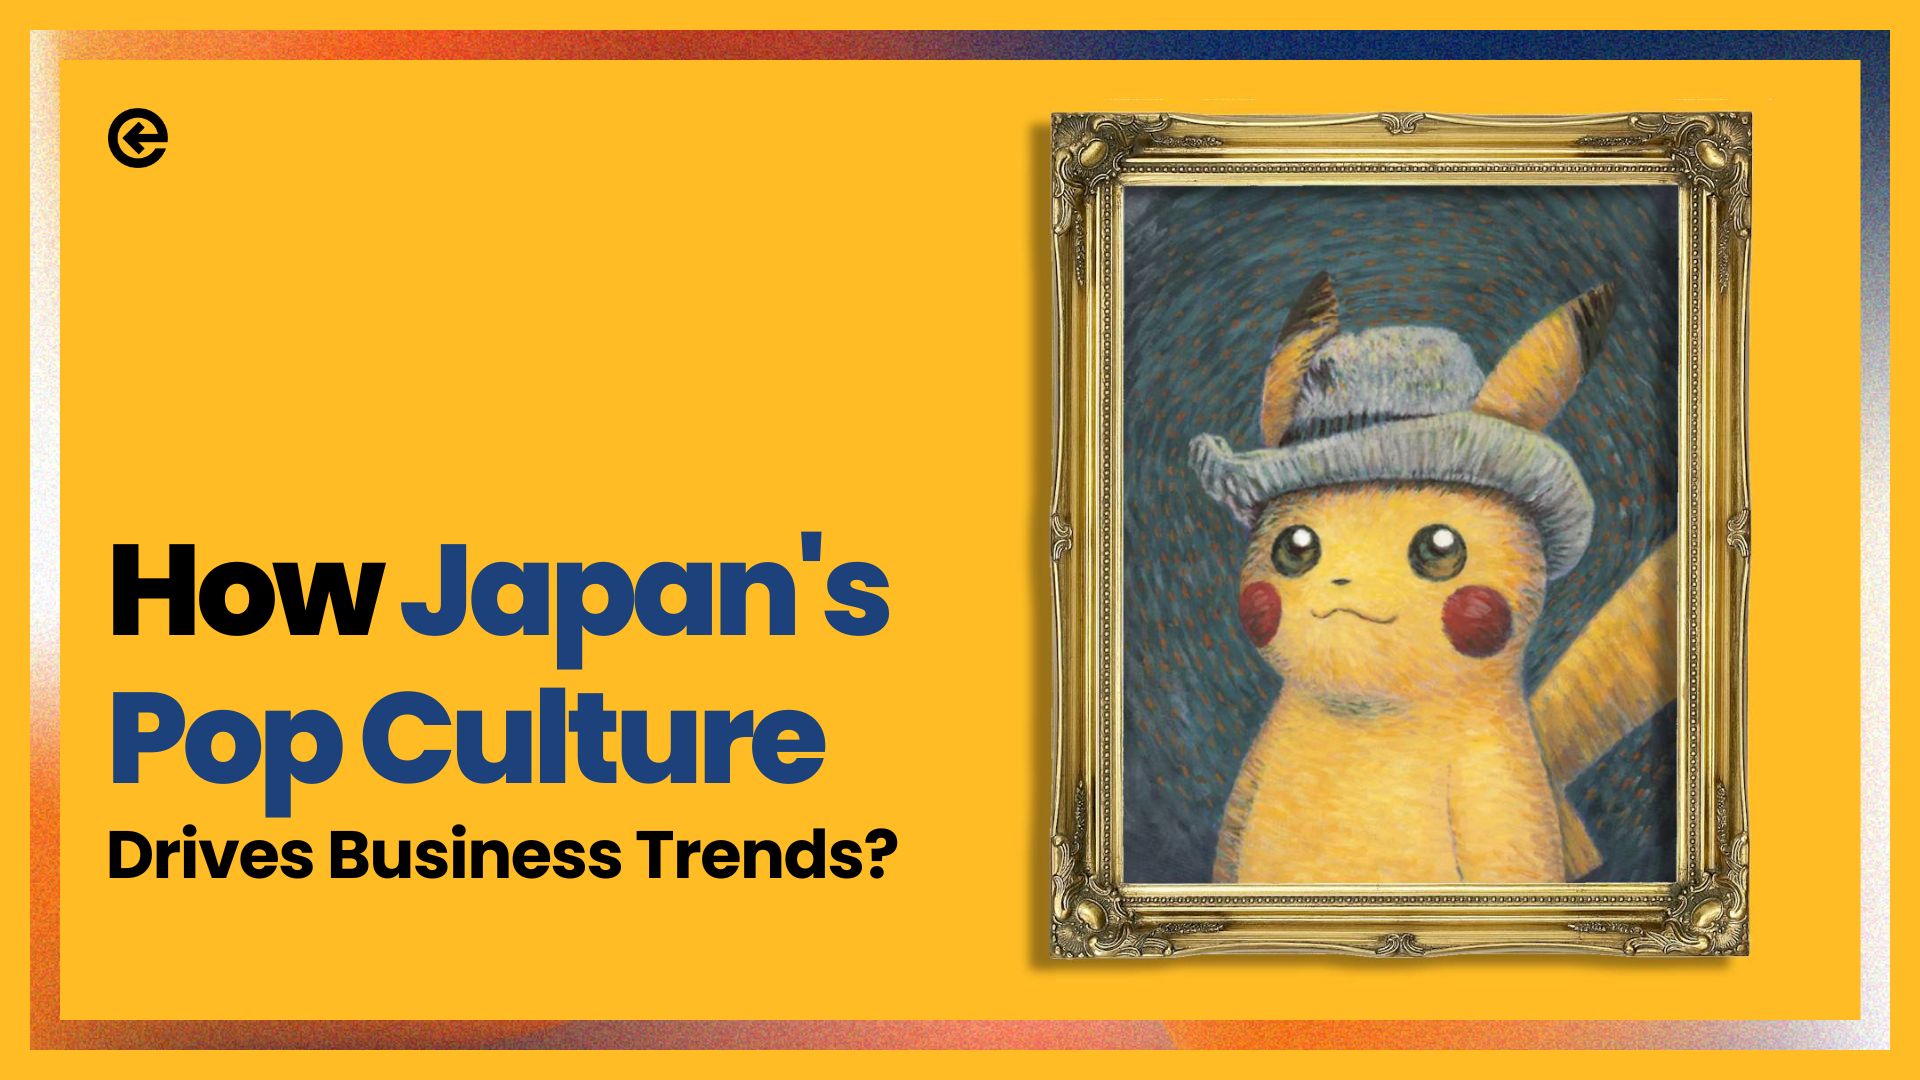 Wie treibt Japans Popkultur Wirtschaftstrends an?